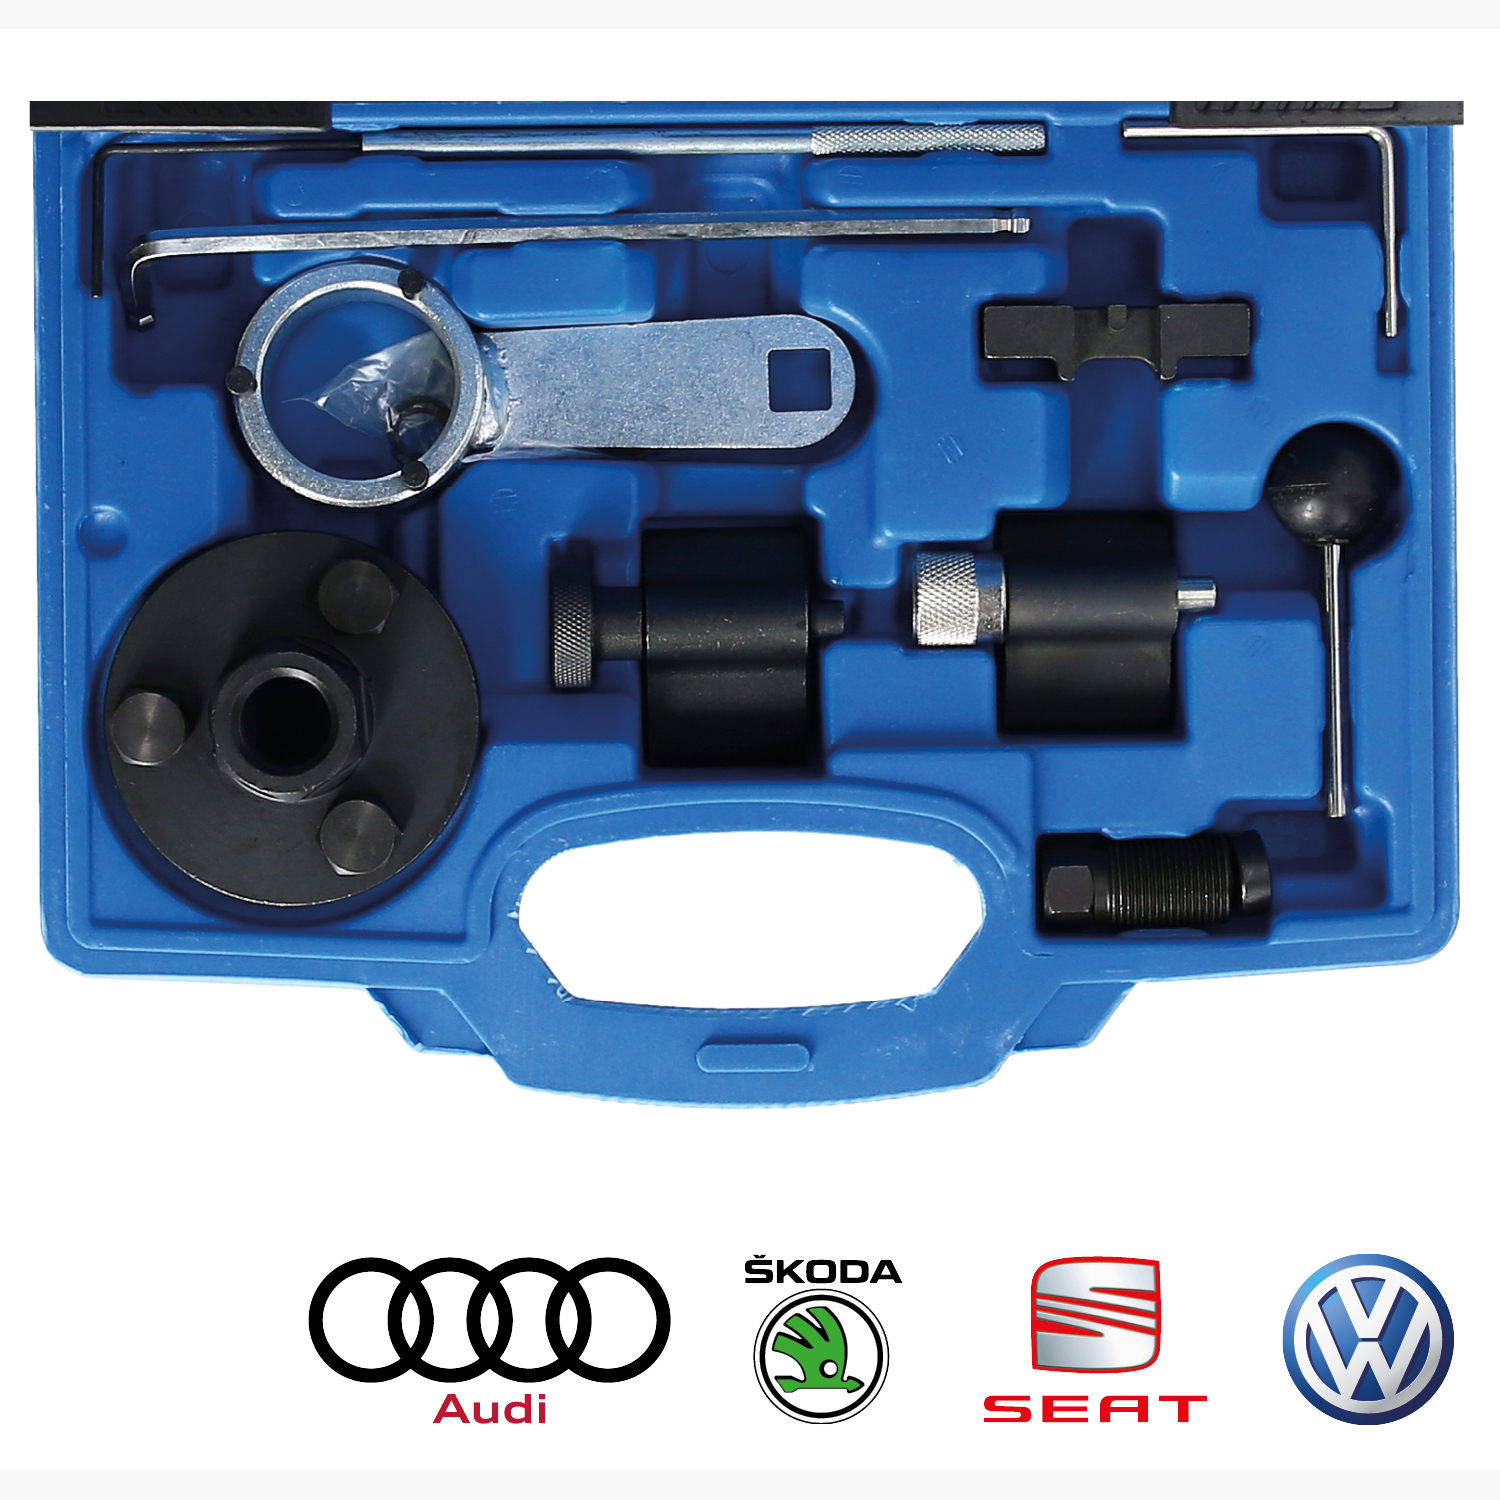 Zahnriemen Wechsel Werkzeug Motor Einstellwerkzeug VW VAG Audi 1.6 2.0 TDI  CR